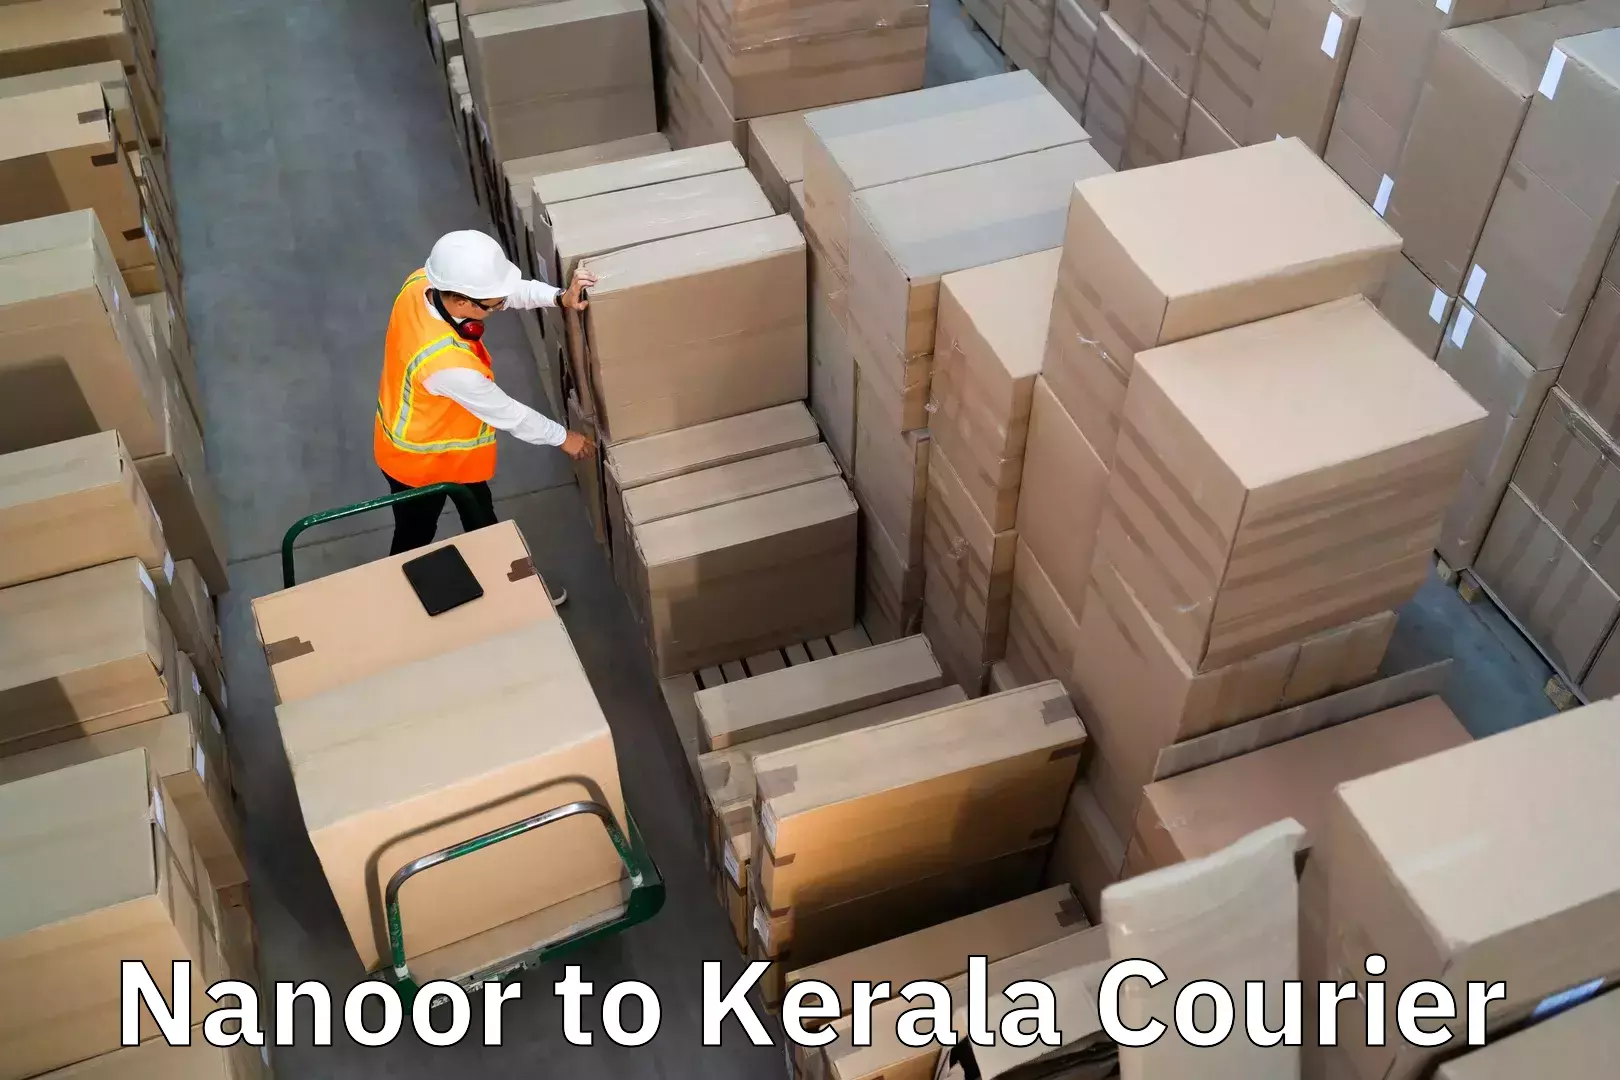 Baggage shipping experts Nanoor to Palakkad